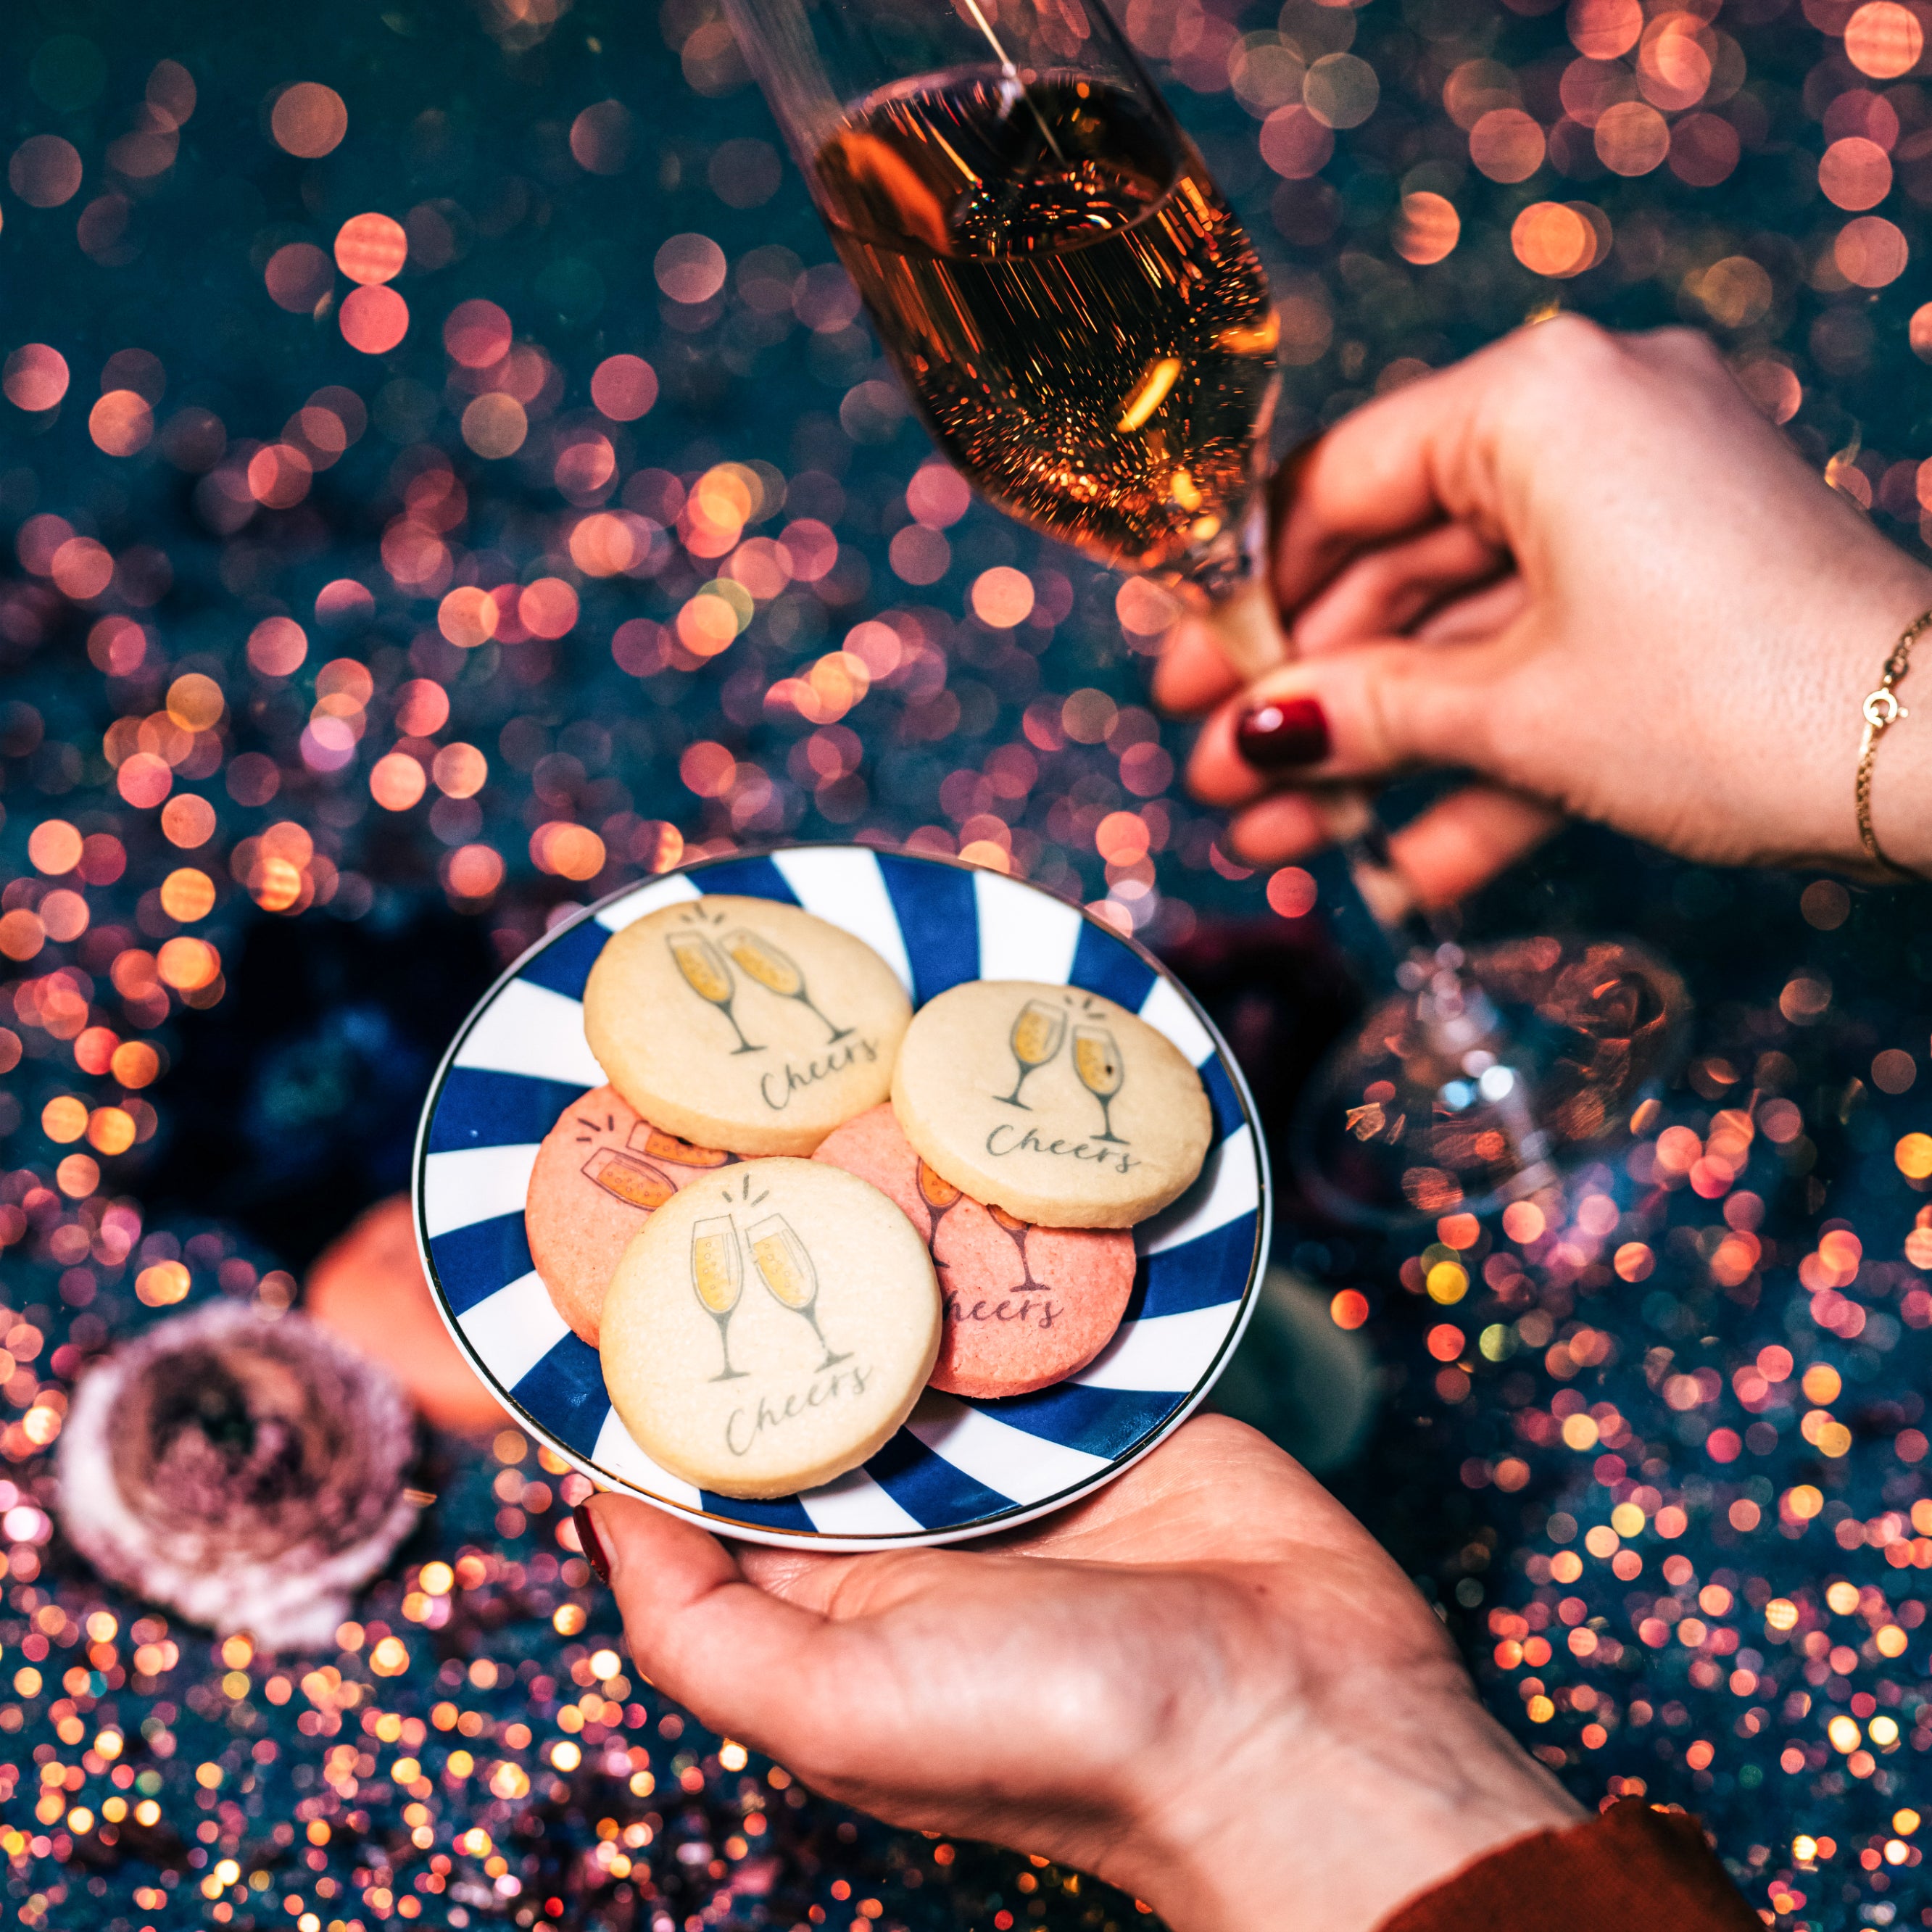 Biscotti personalizzati a tema festa party anniversario cheers auguri  - Idee regalo